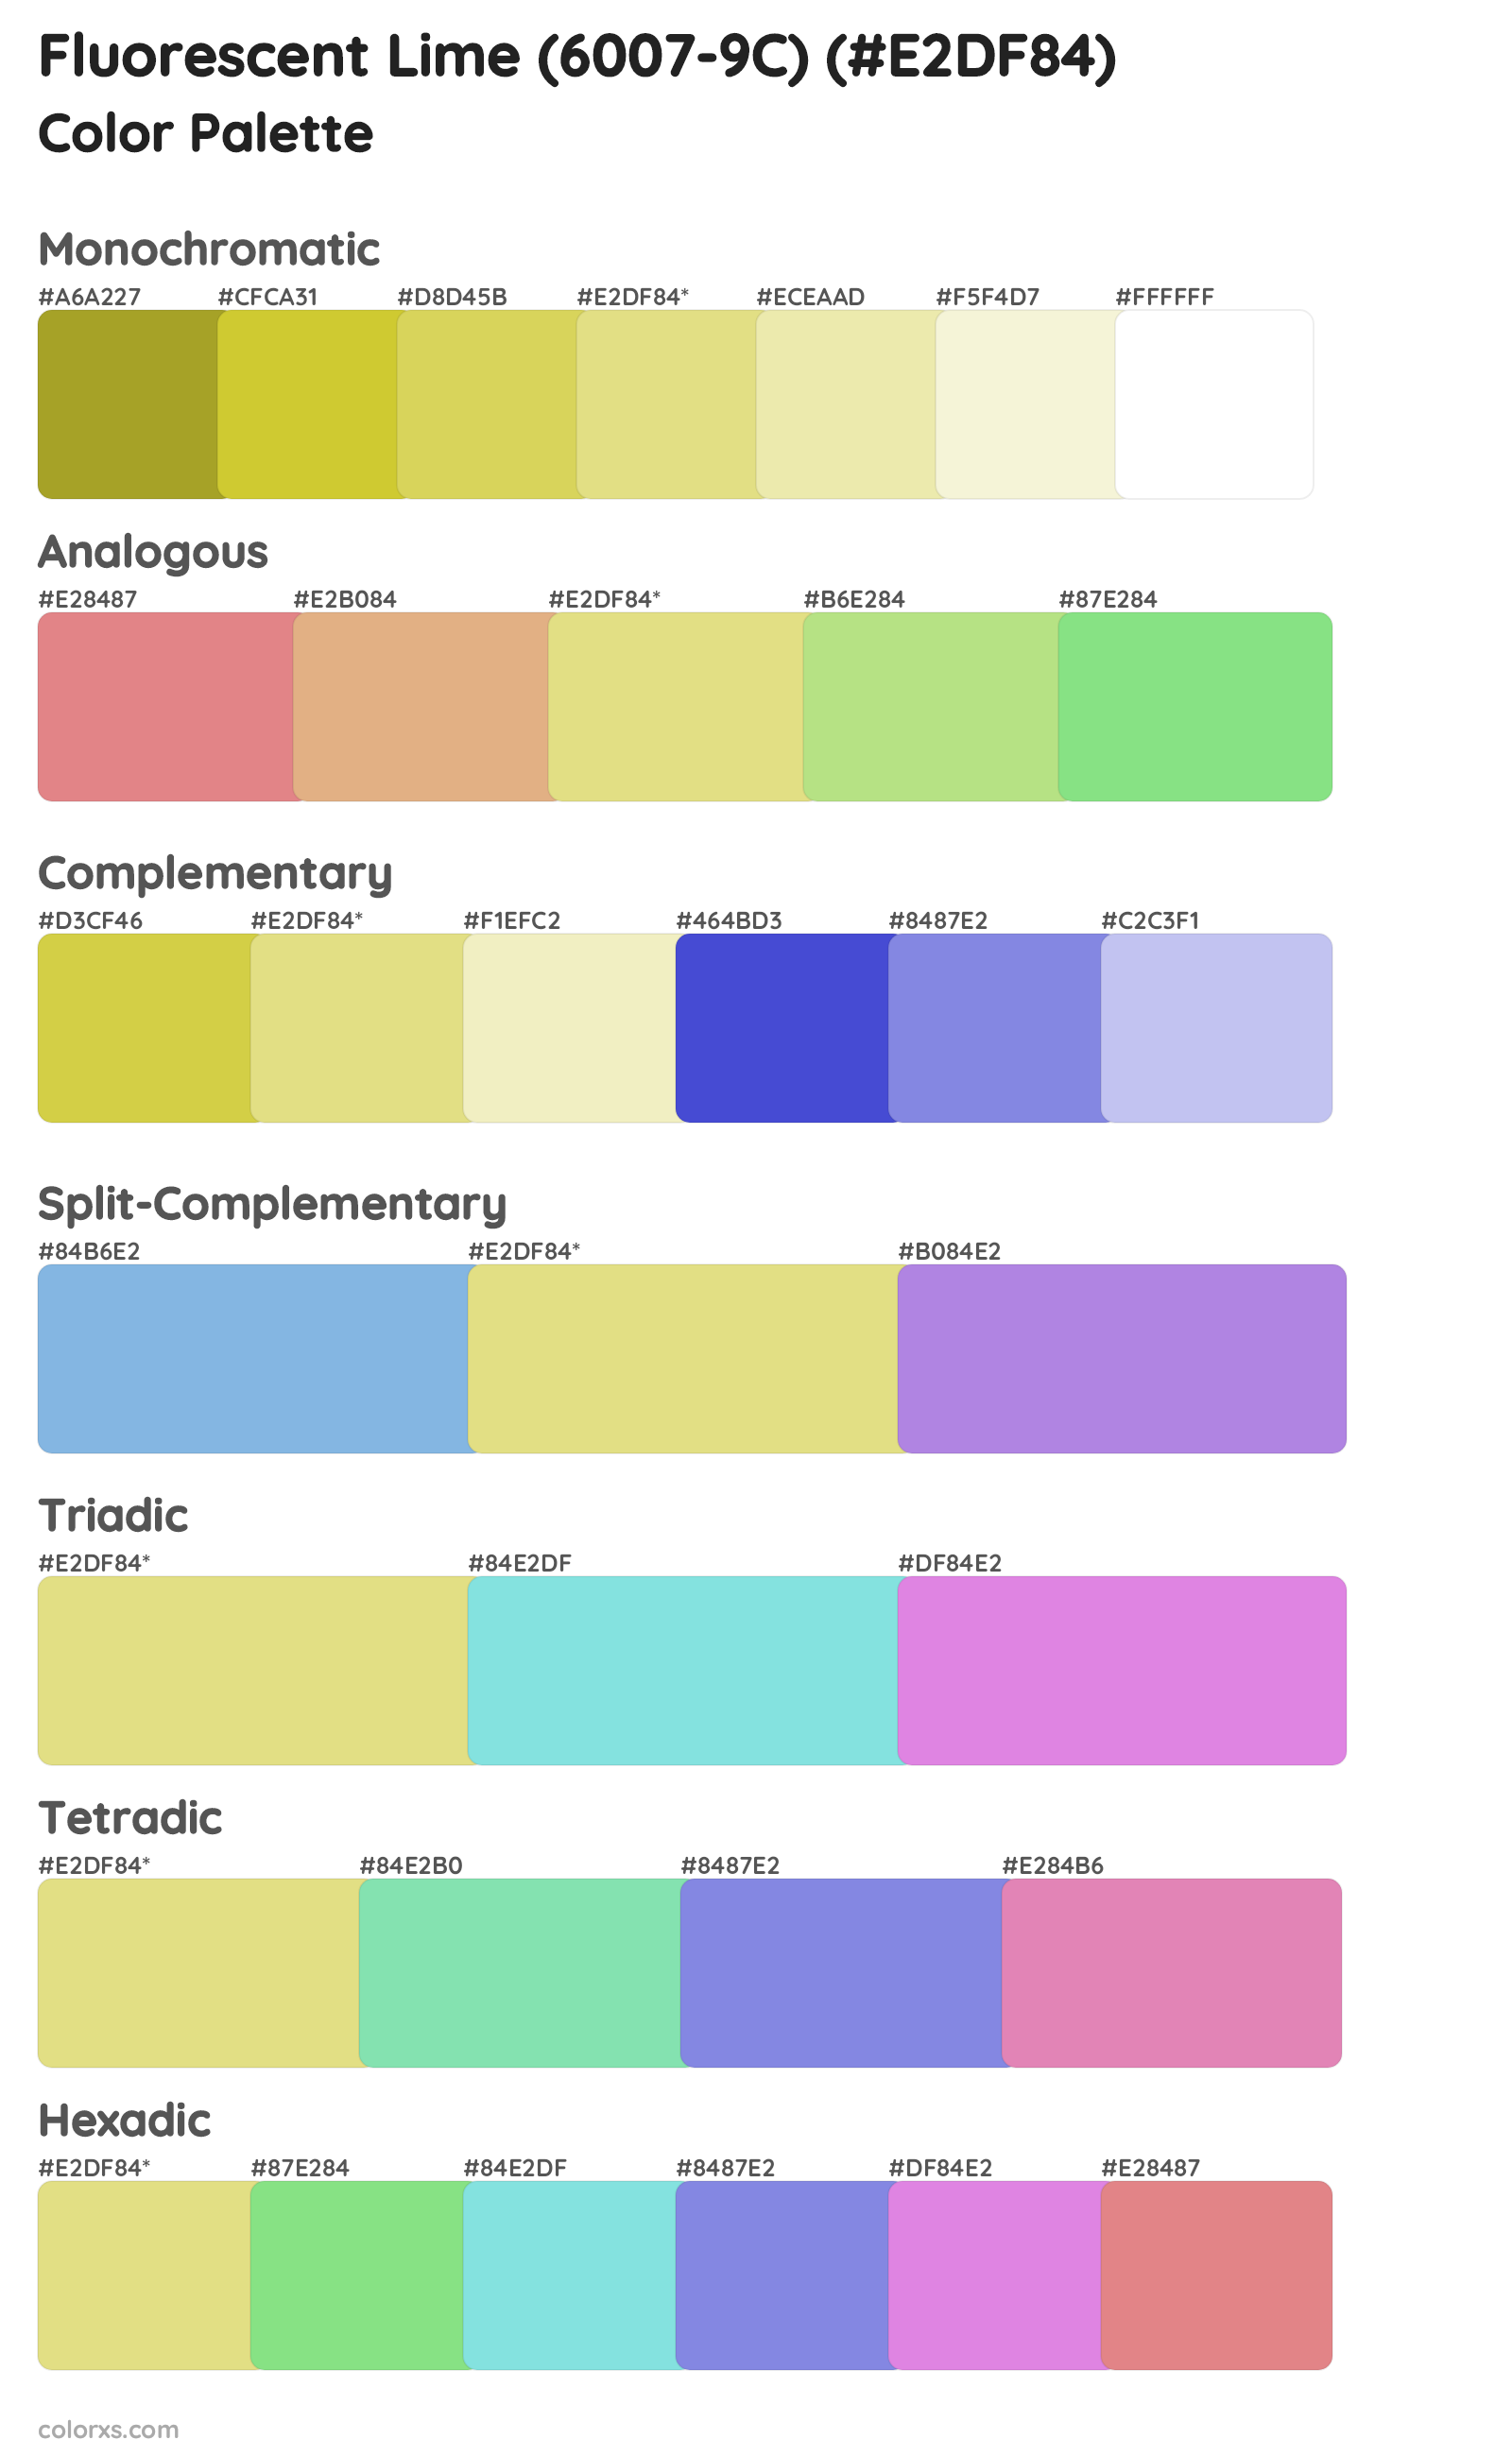 Fluorescent Lime (6007-9C) Color Scheme Palettes